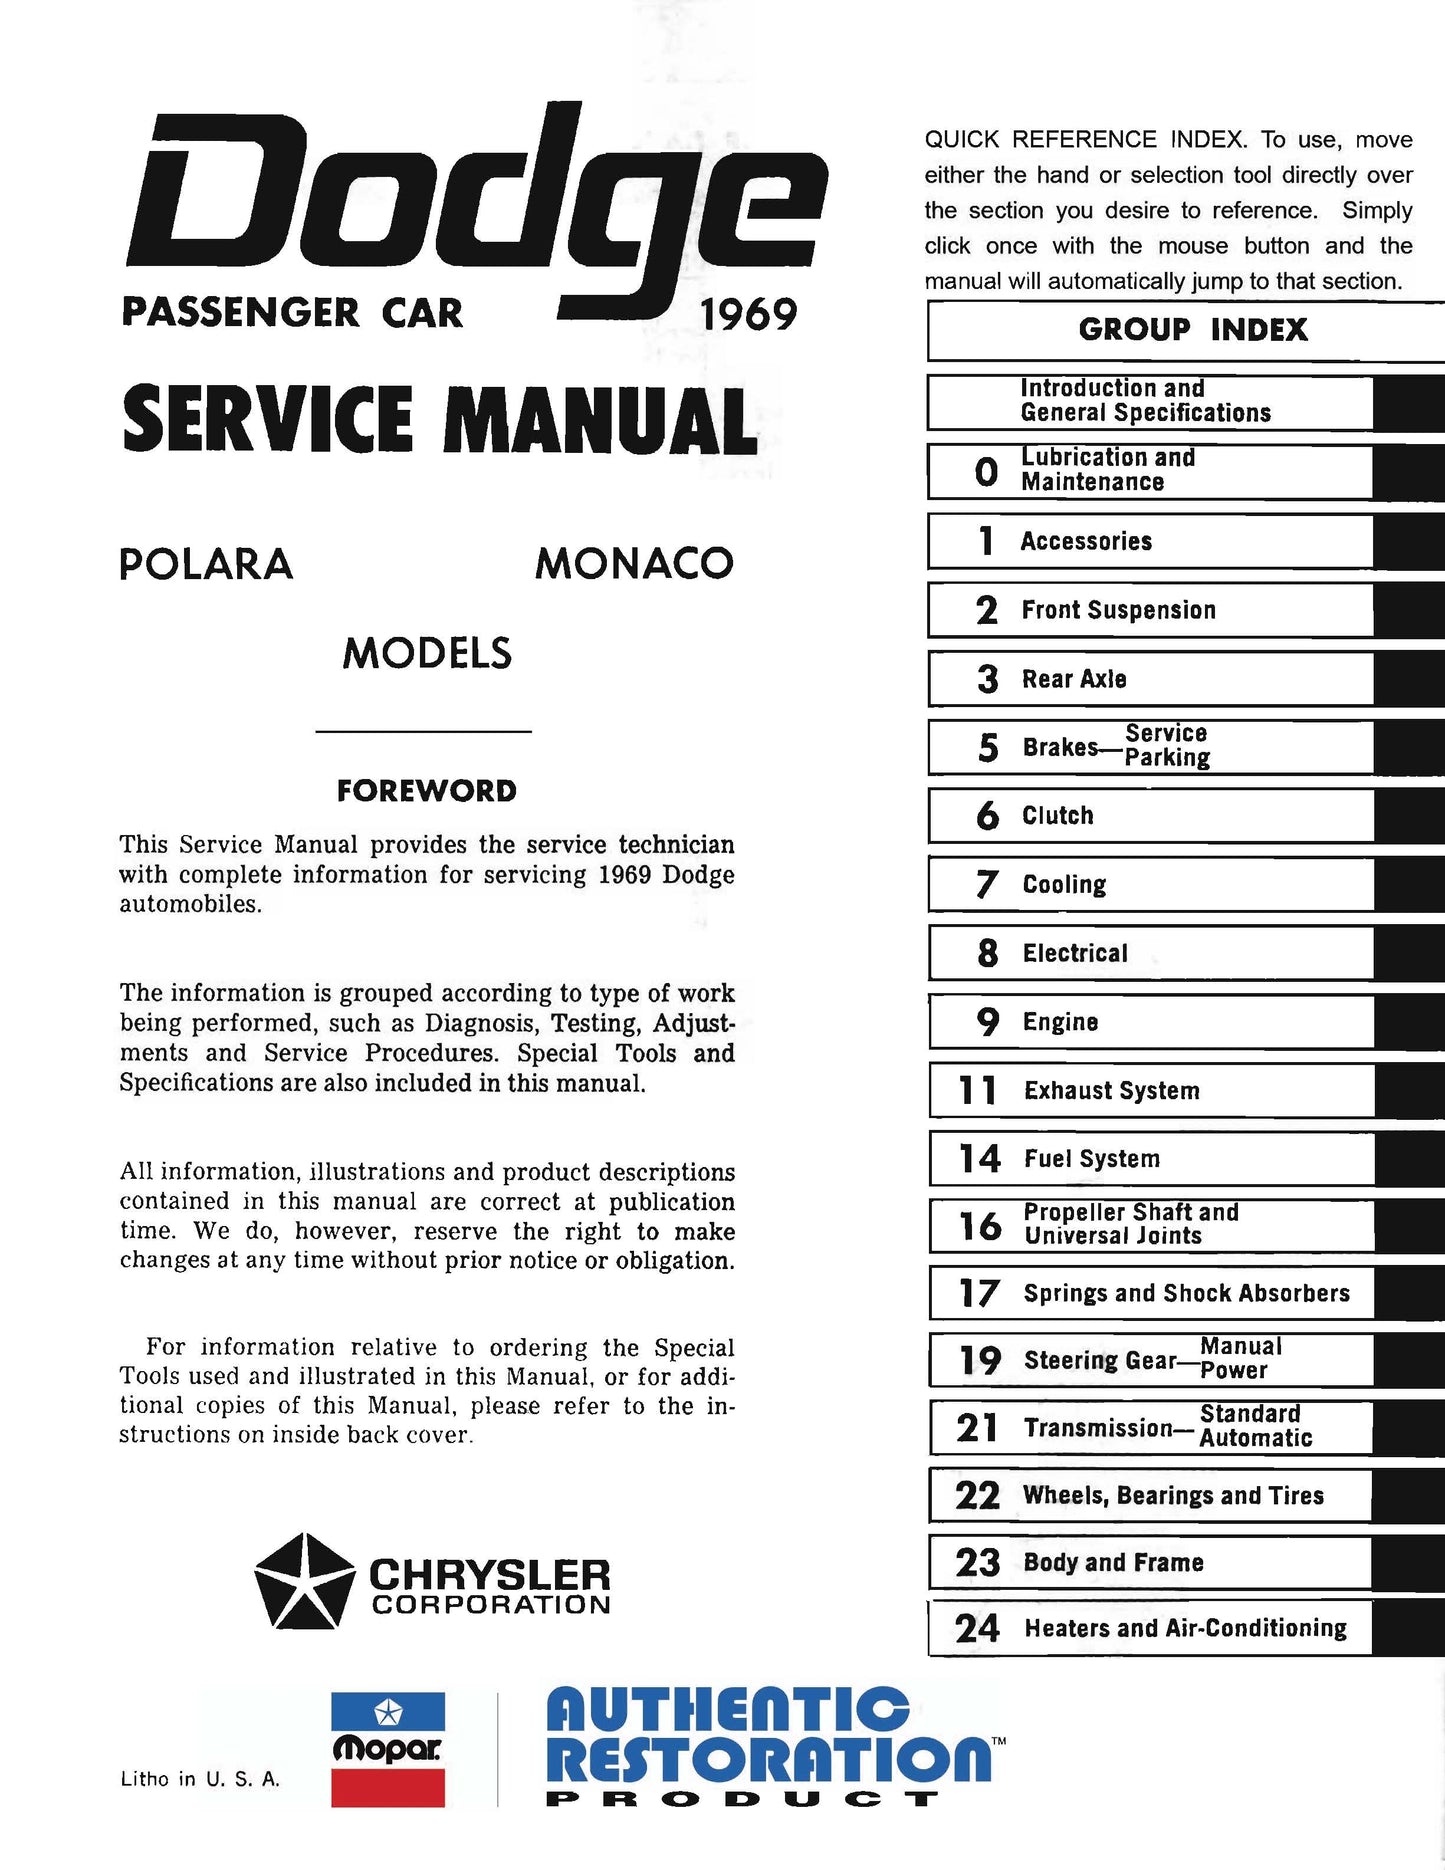 1969 Dodge Service Manuals - All Models